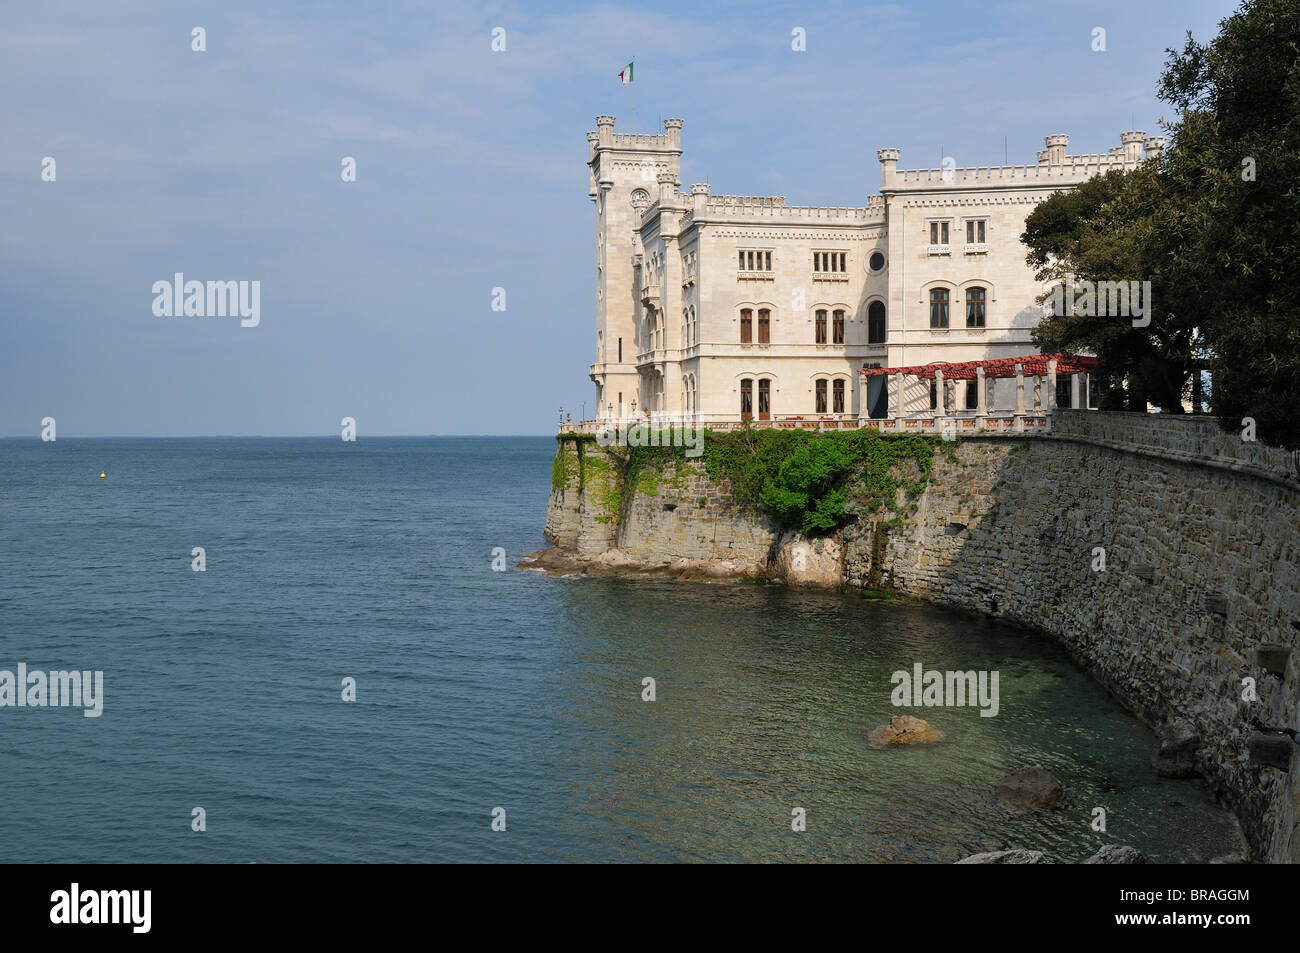 Trieste. Italy. Castle at Miramare. Il Castello di Miramare. Stock Photo